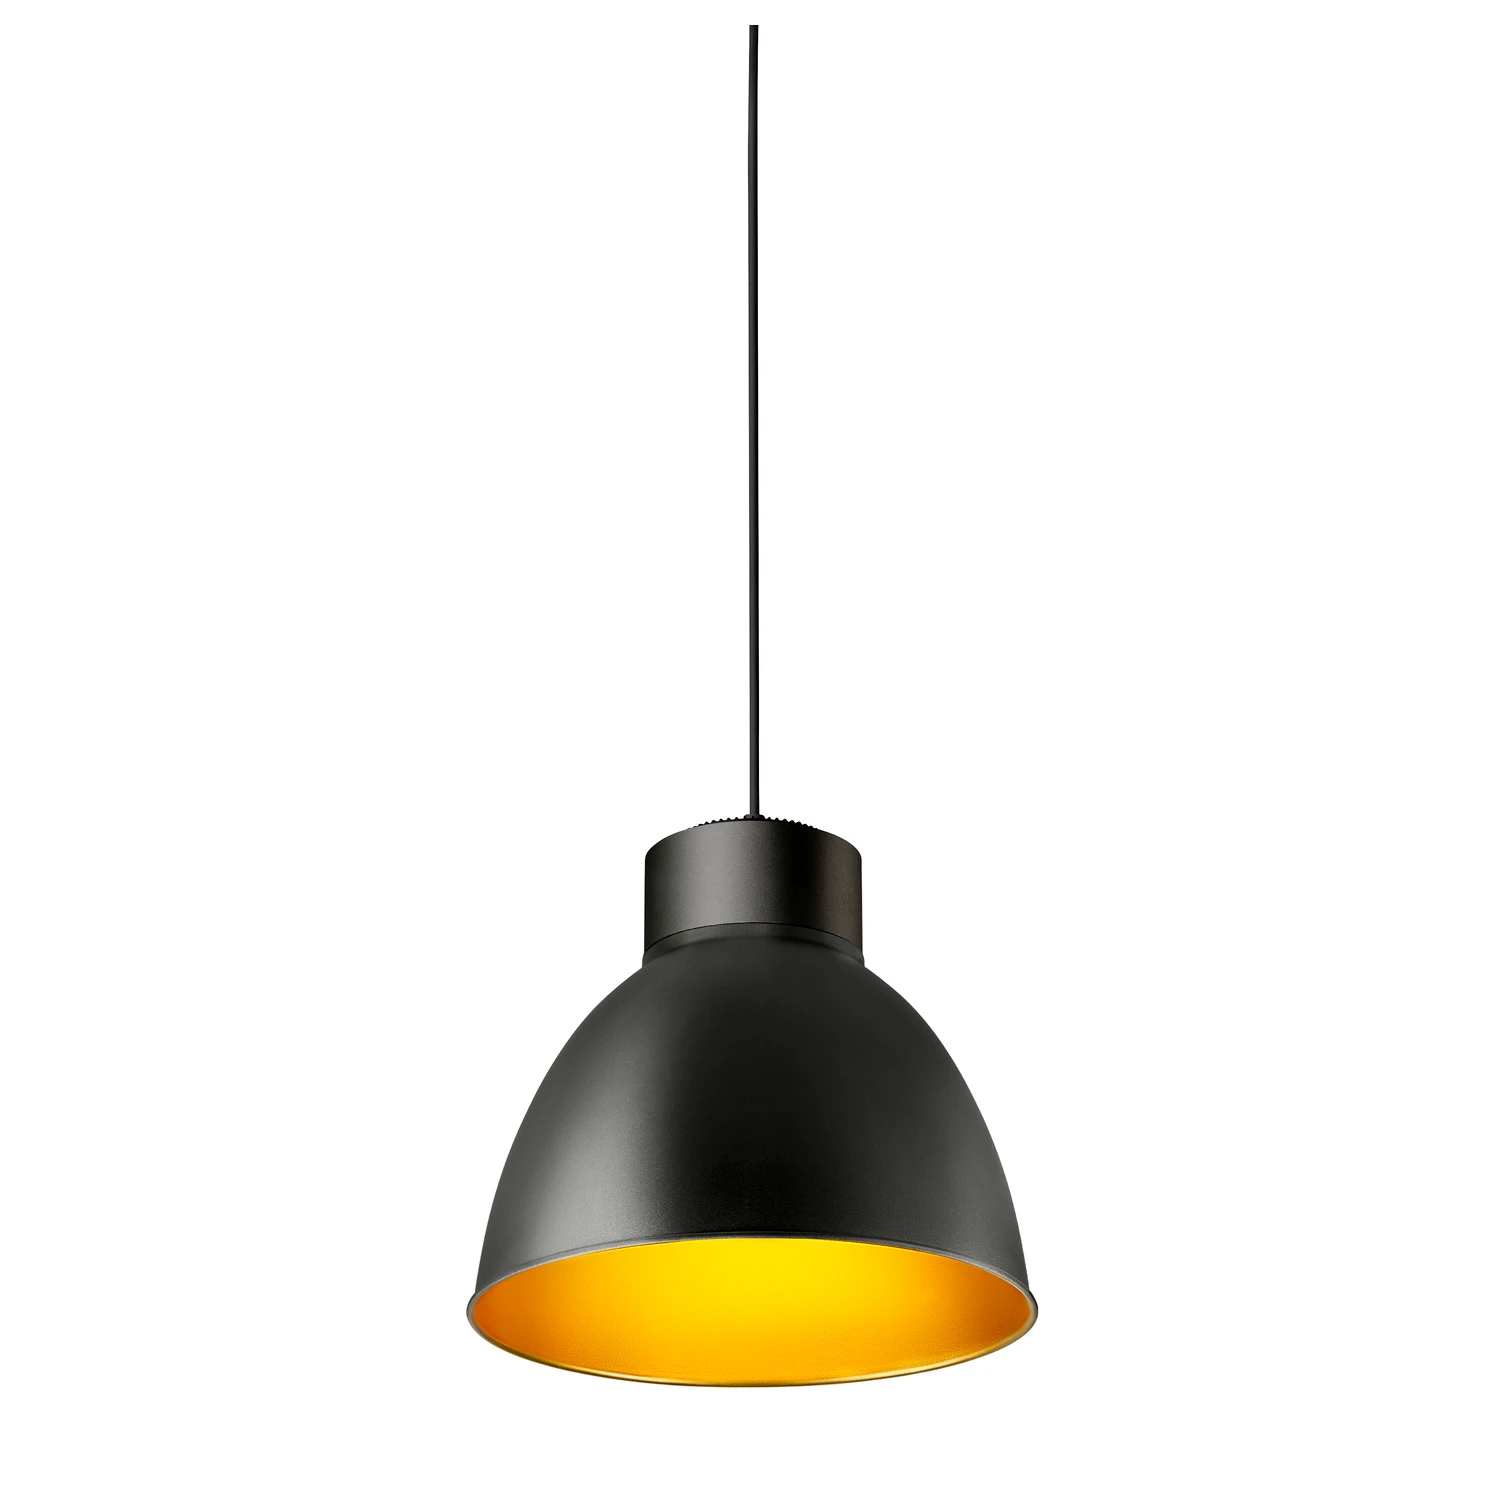 4245553 - SLV PARA DOME Lamp shade black